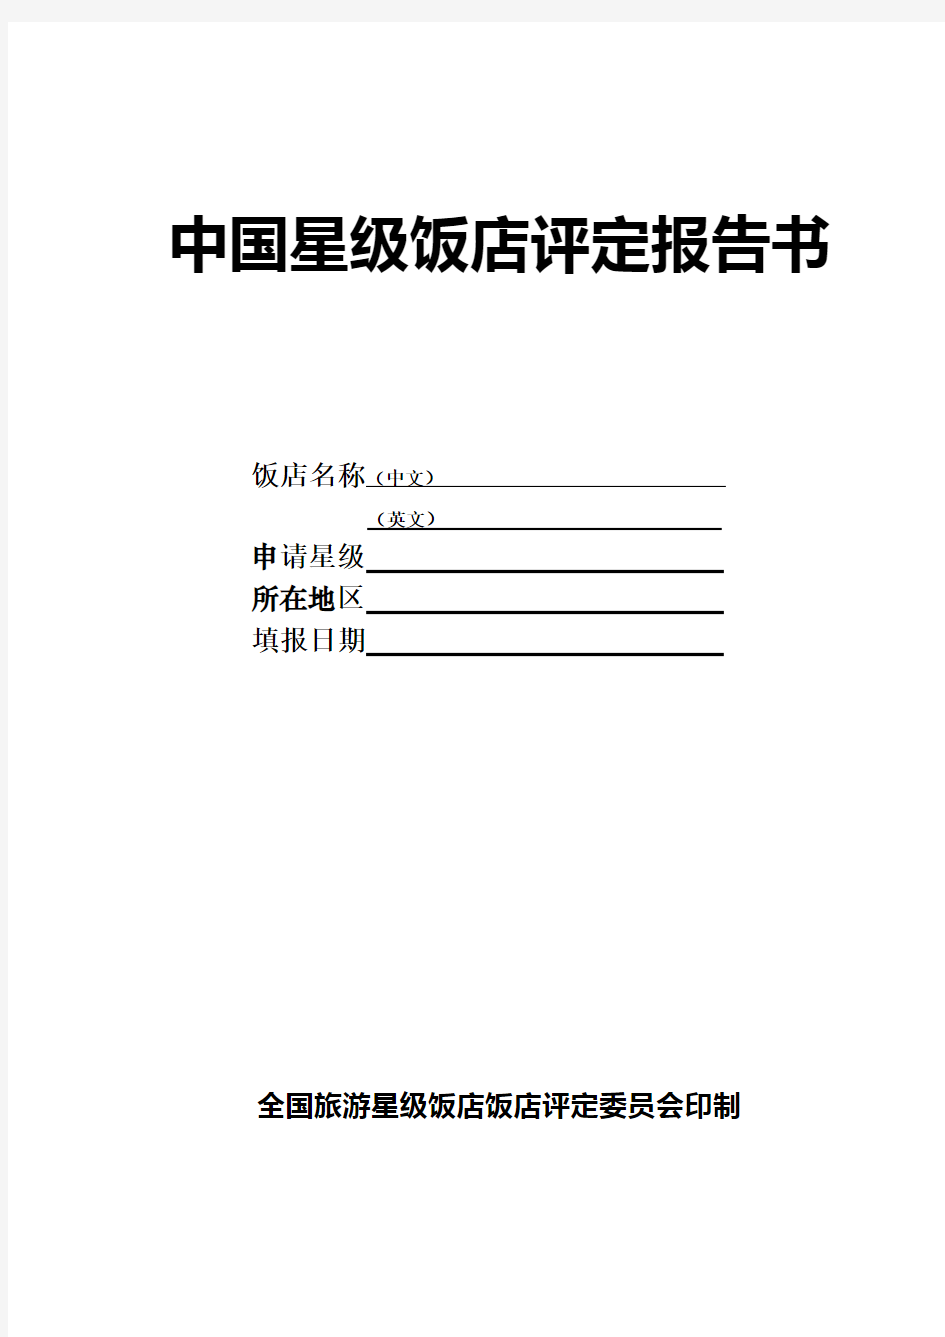 中国星级饭店评定报告书2010